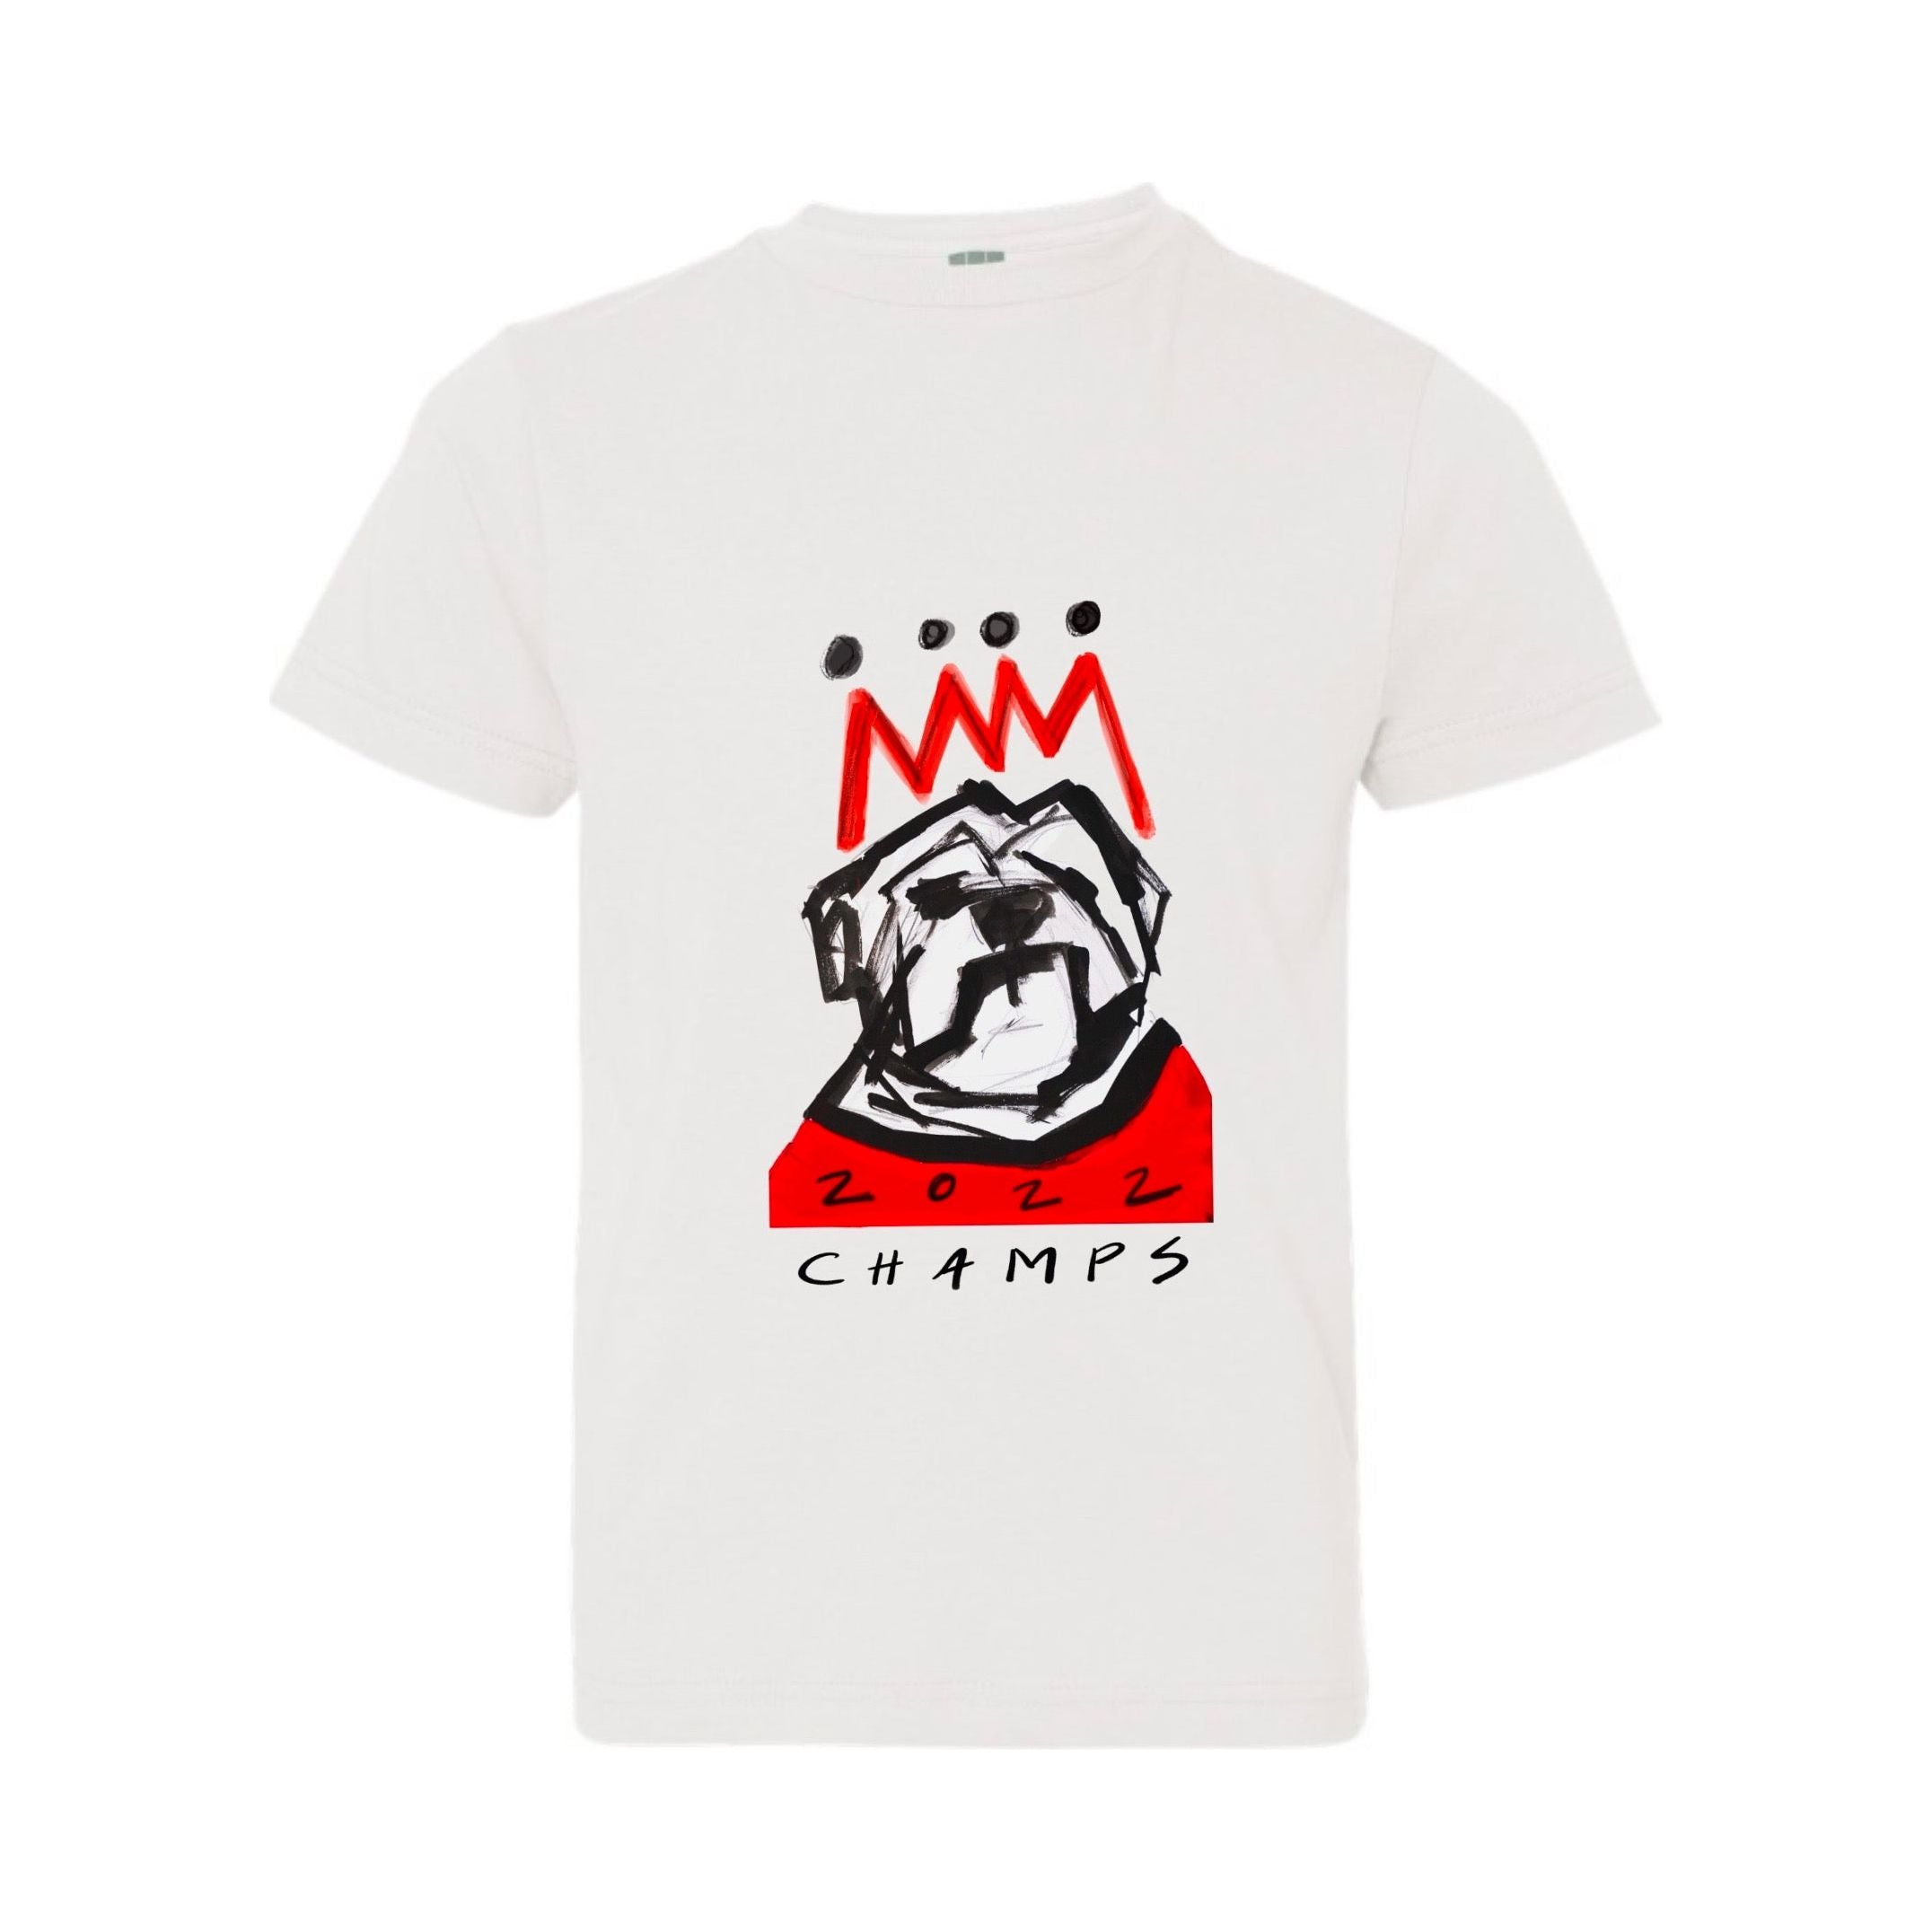 2022 Crowned Bulldog Youth T-Shirt